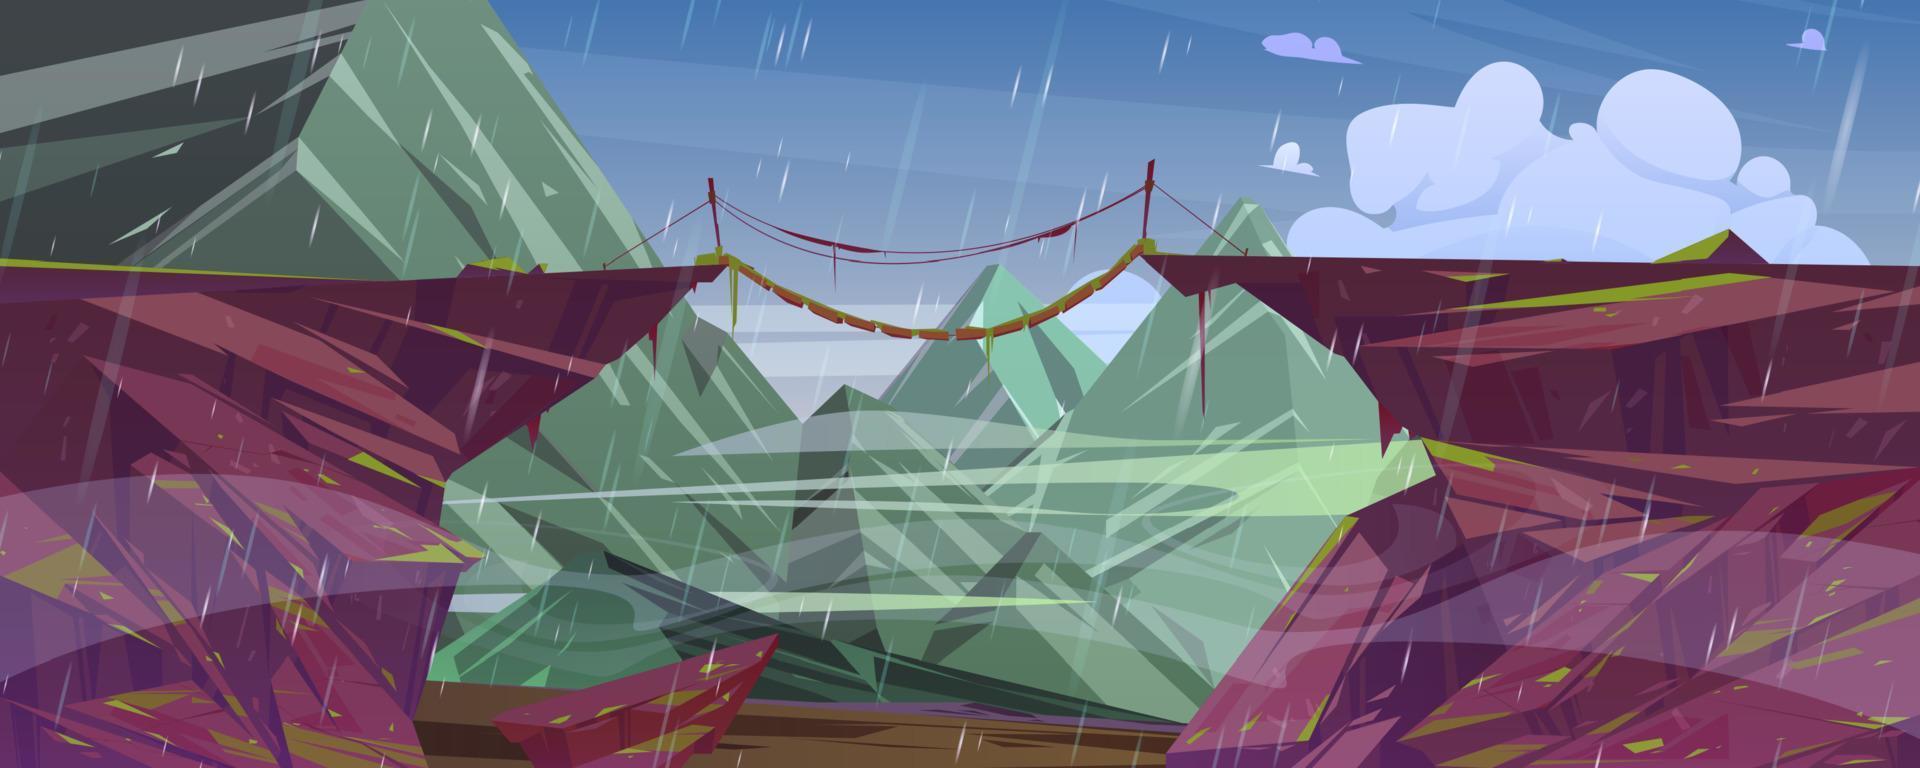 lluvia en paisaje de montaña con puente colgante vector